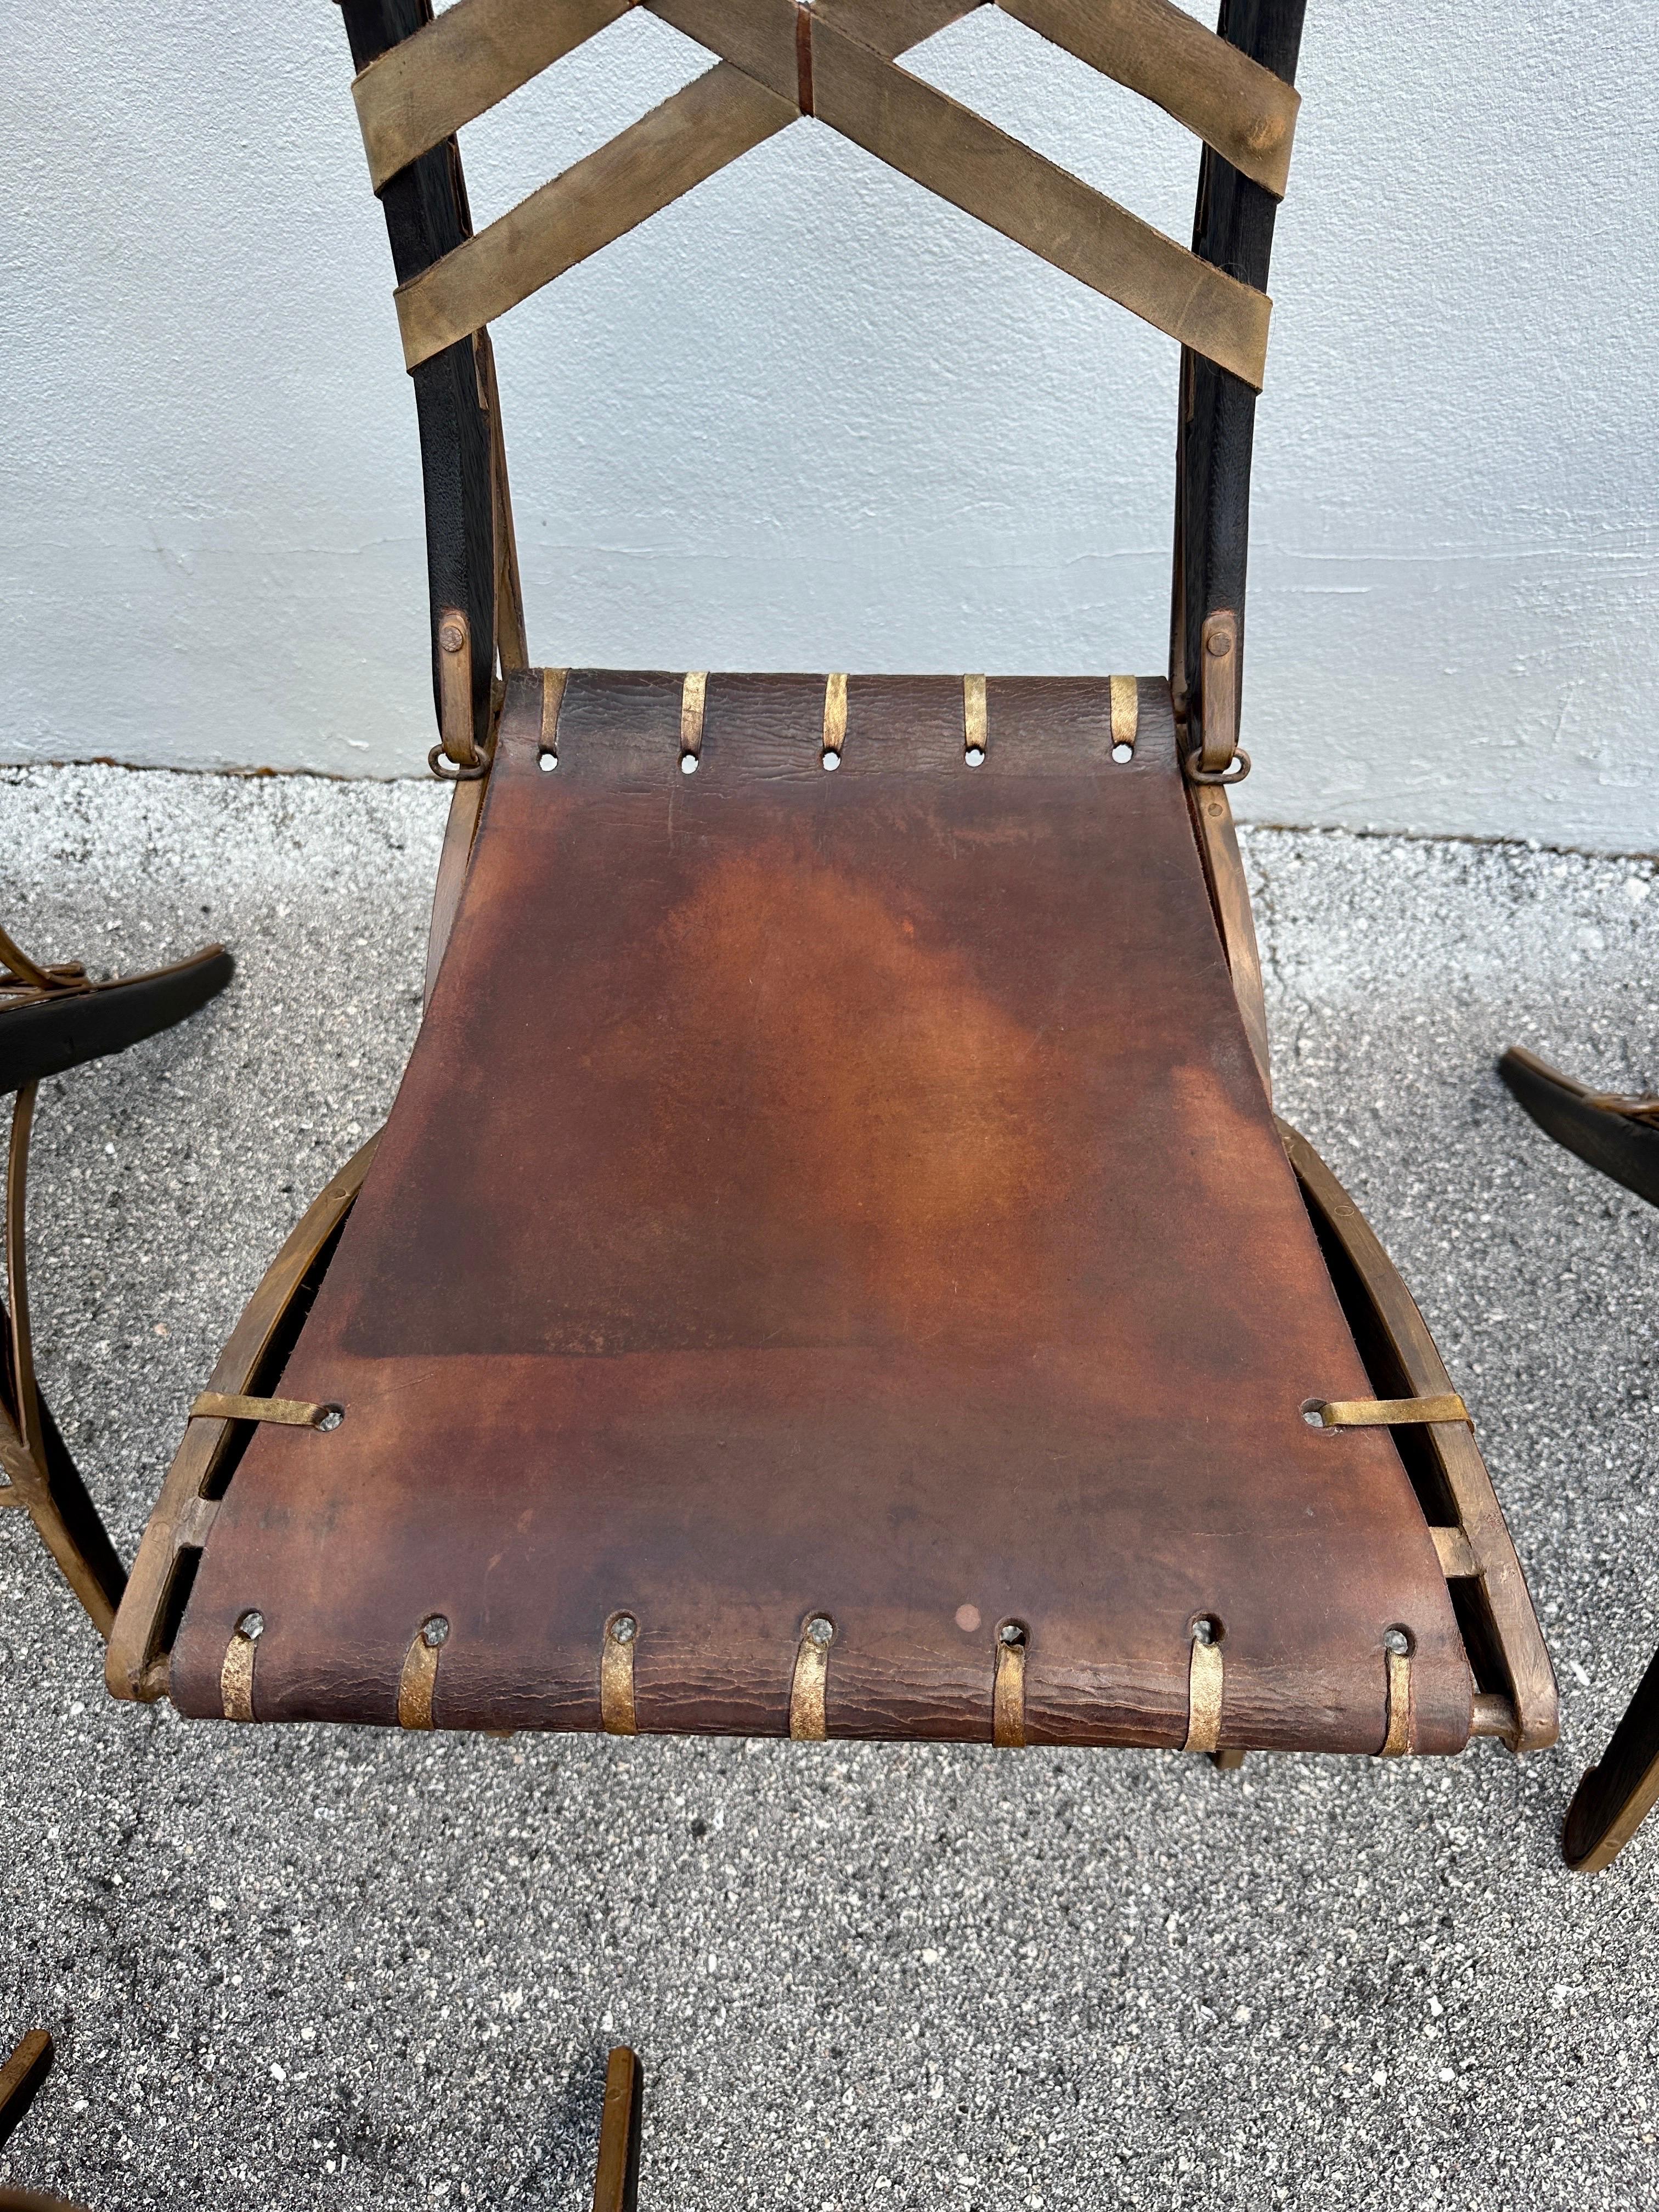 Hinweis: Der Preis gilt für das gesamte Set von 12 Stühlen. Diese von Alberto Marconetti entworfenen Stühle bestehen aus Eichenholz, lackiertem Eisen und Lederbändern. Korbgeflecht an der Rückenlehne, lackierte Eisenrahmen und Eisenschlaufen und